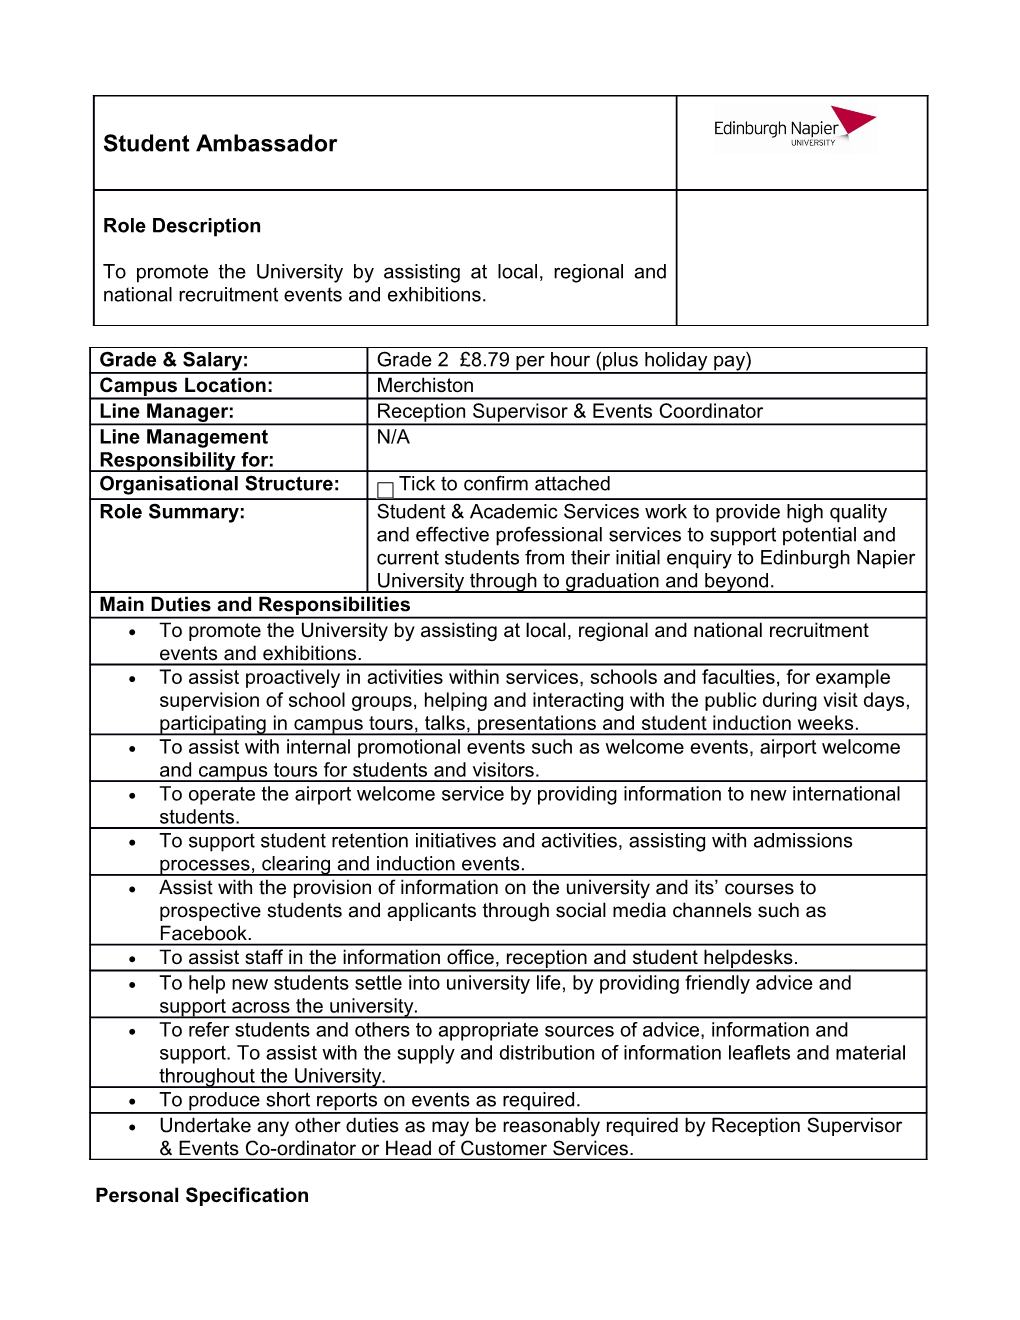 Student Ambassador - Job Description 2014-15